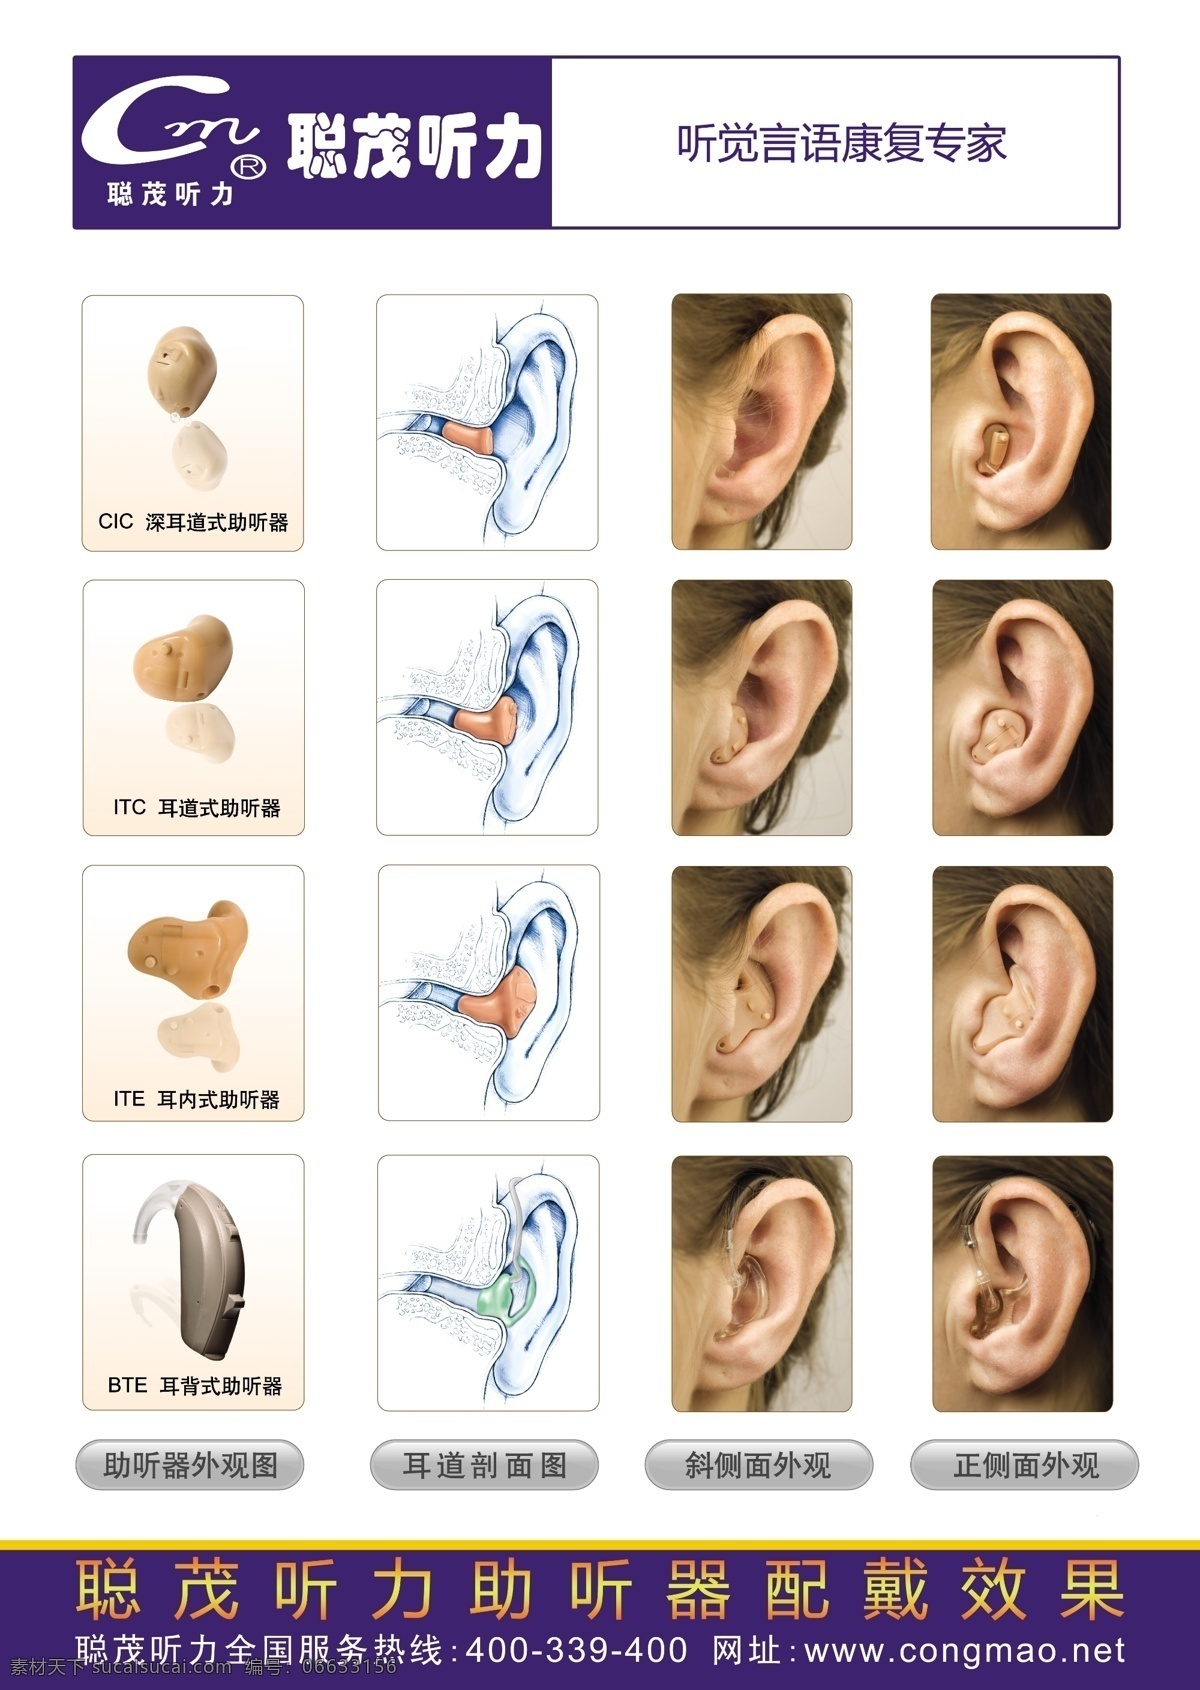 助听器 佩戴 示意图 耳朵 演示 助听器佩戴 听力 聪茂 聋哑人 300分辨率 海报 dm单 喷绘